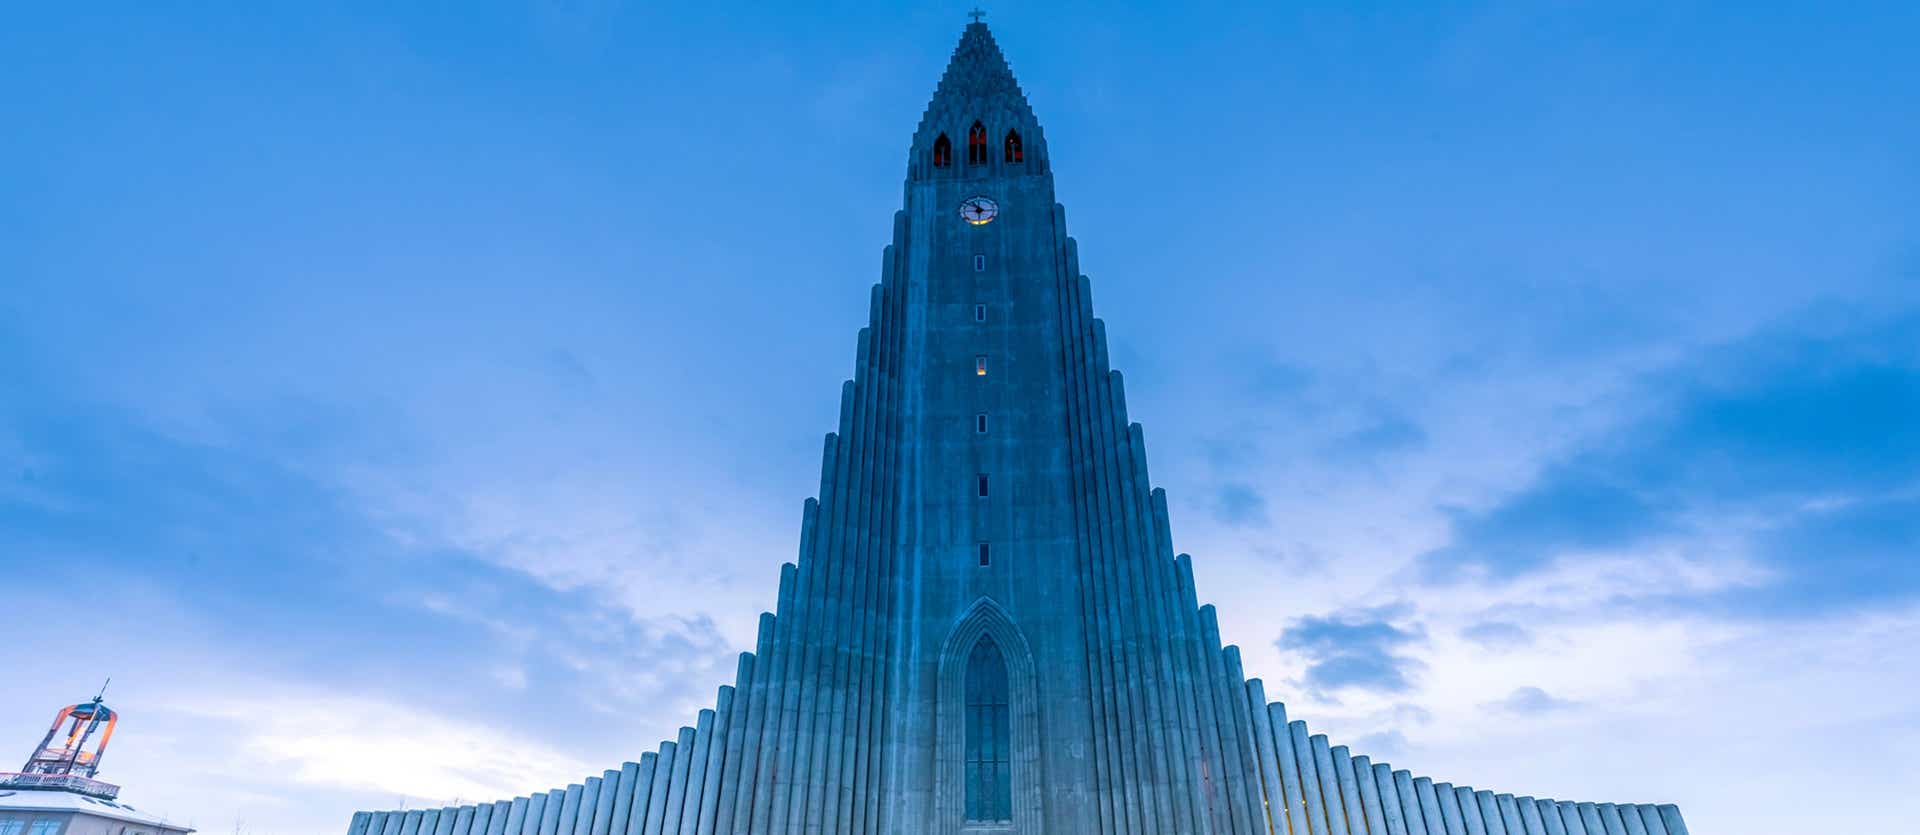 Catedral de Hallgrimskirkja <span class="iconos separador"></span> Reikiavik